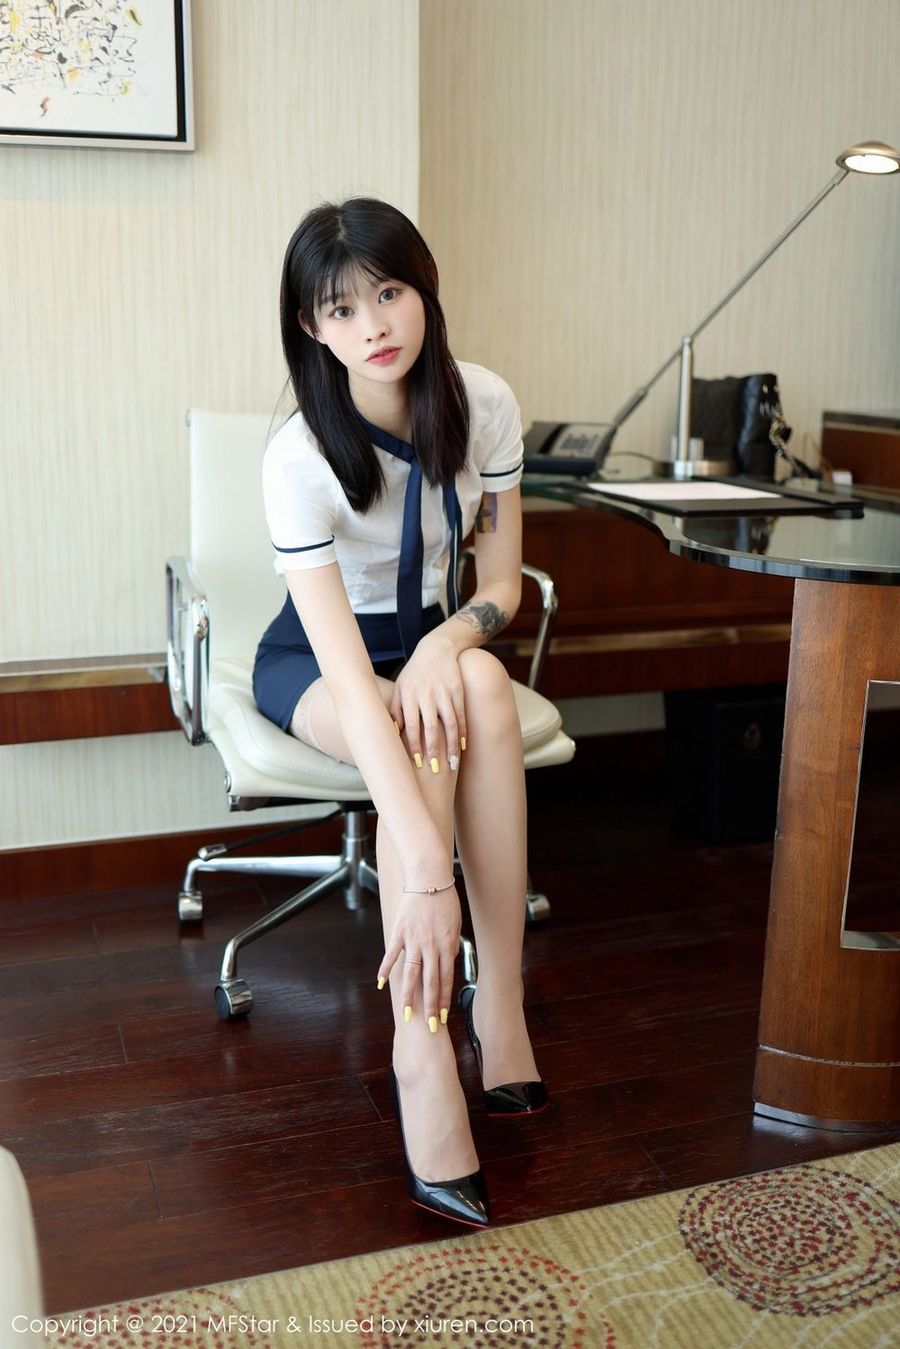 新人模特77qiqi校园风格学生装丝袜系列首套写真